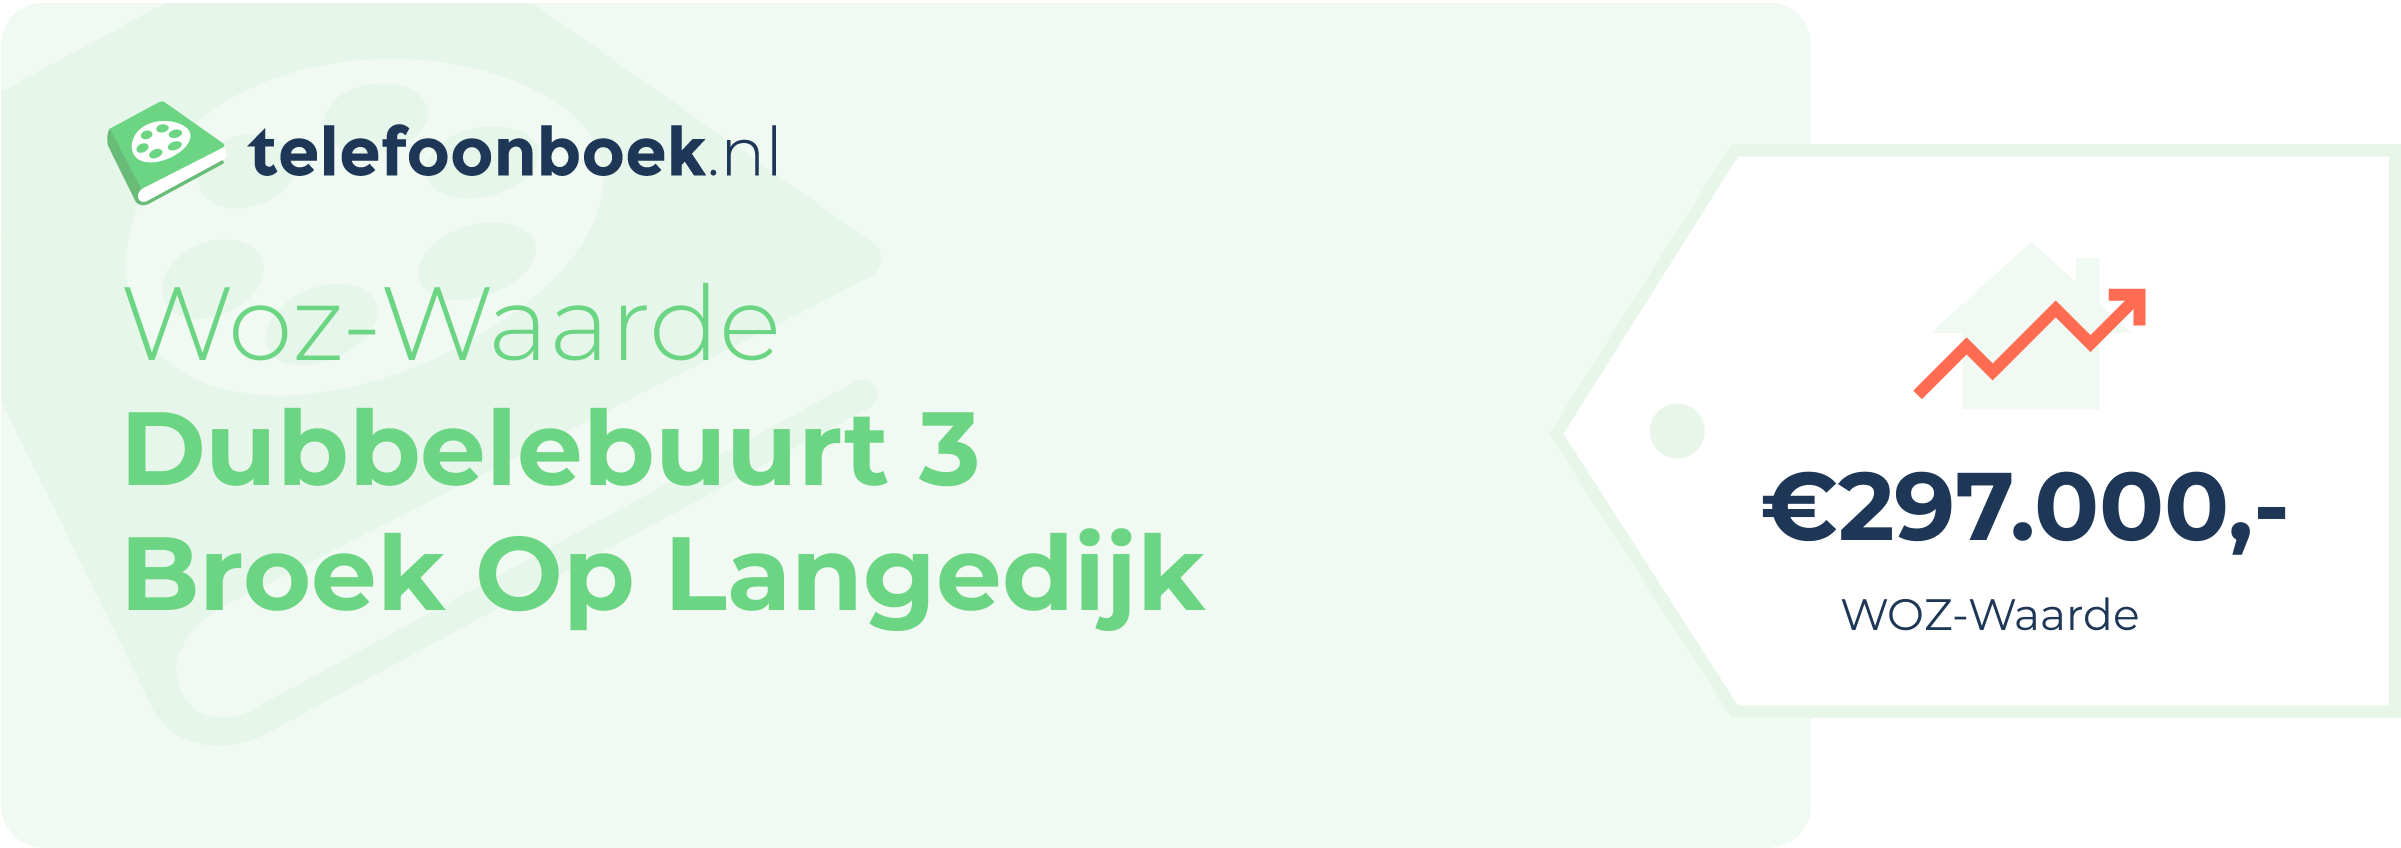 WOZ-waarde Dubbelebuurt 3 Broek Op Langedijk